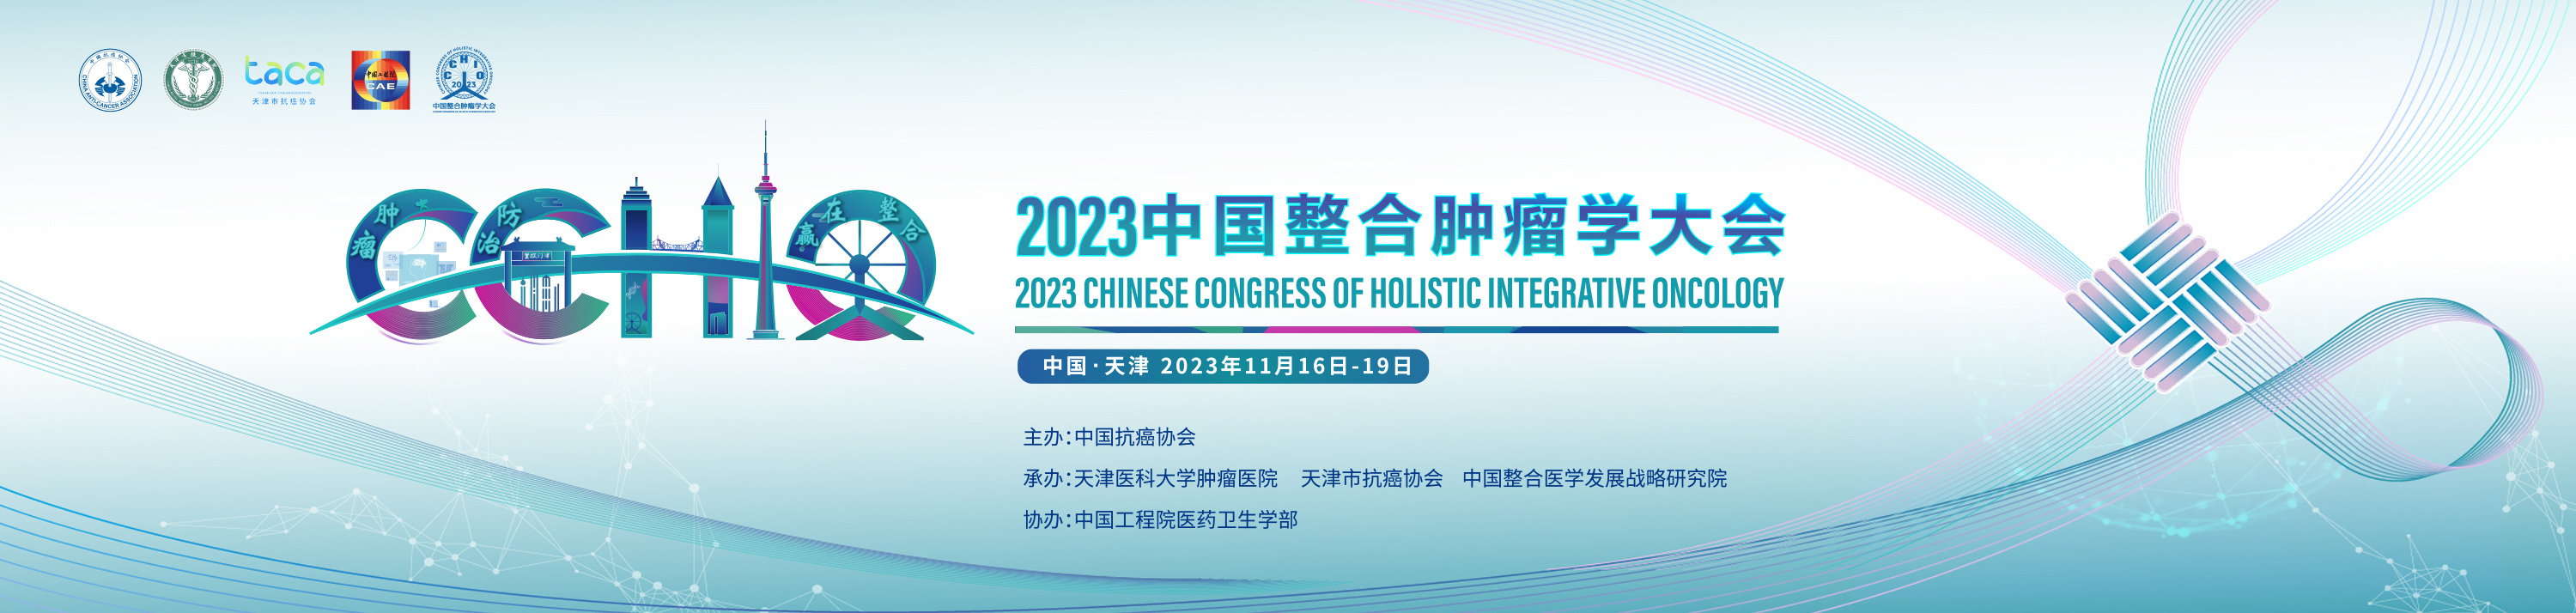 2023中国整合肿瘤学大会